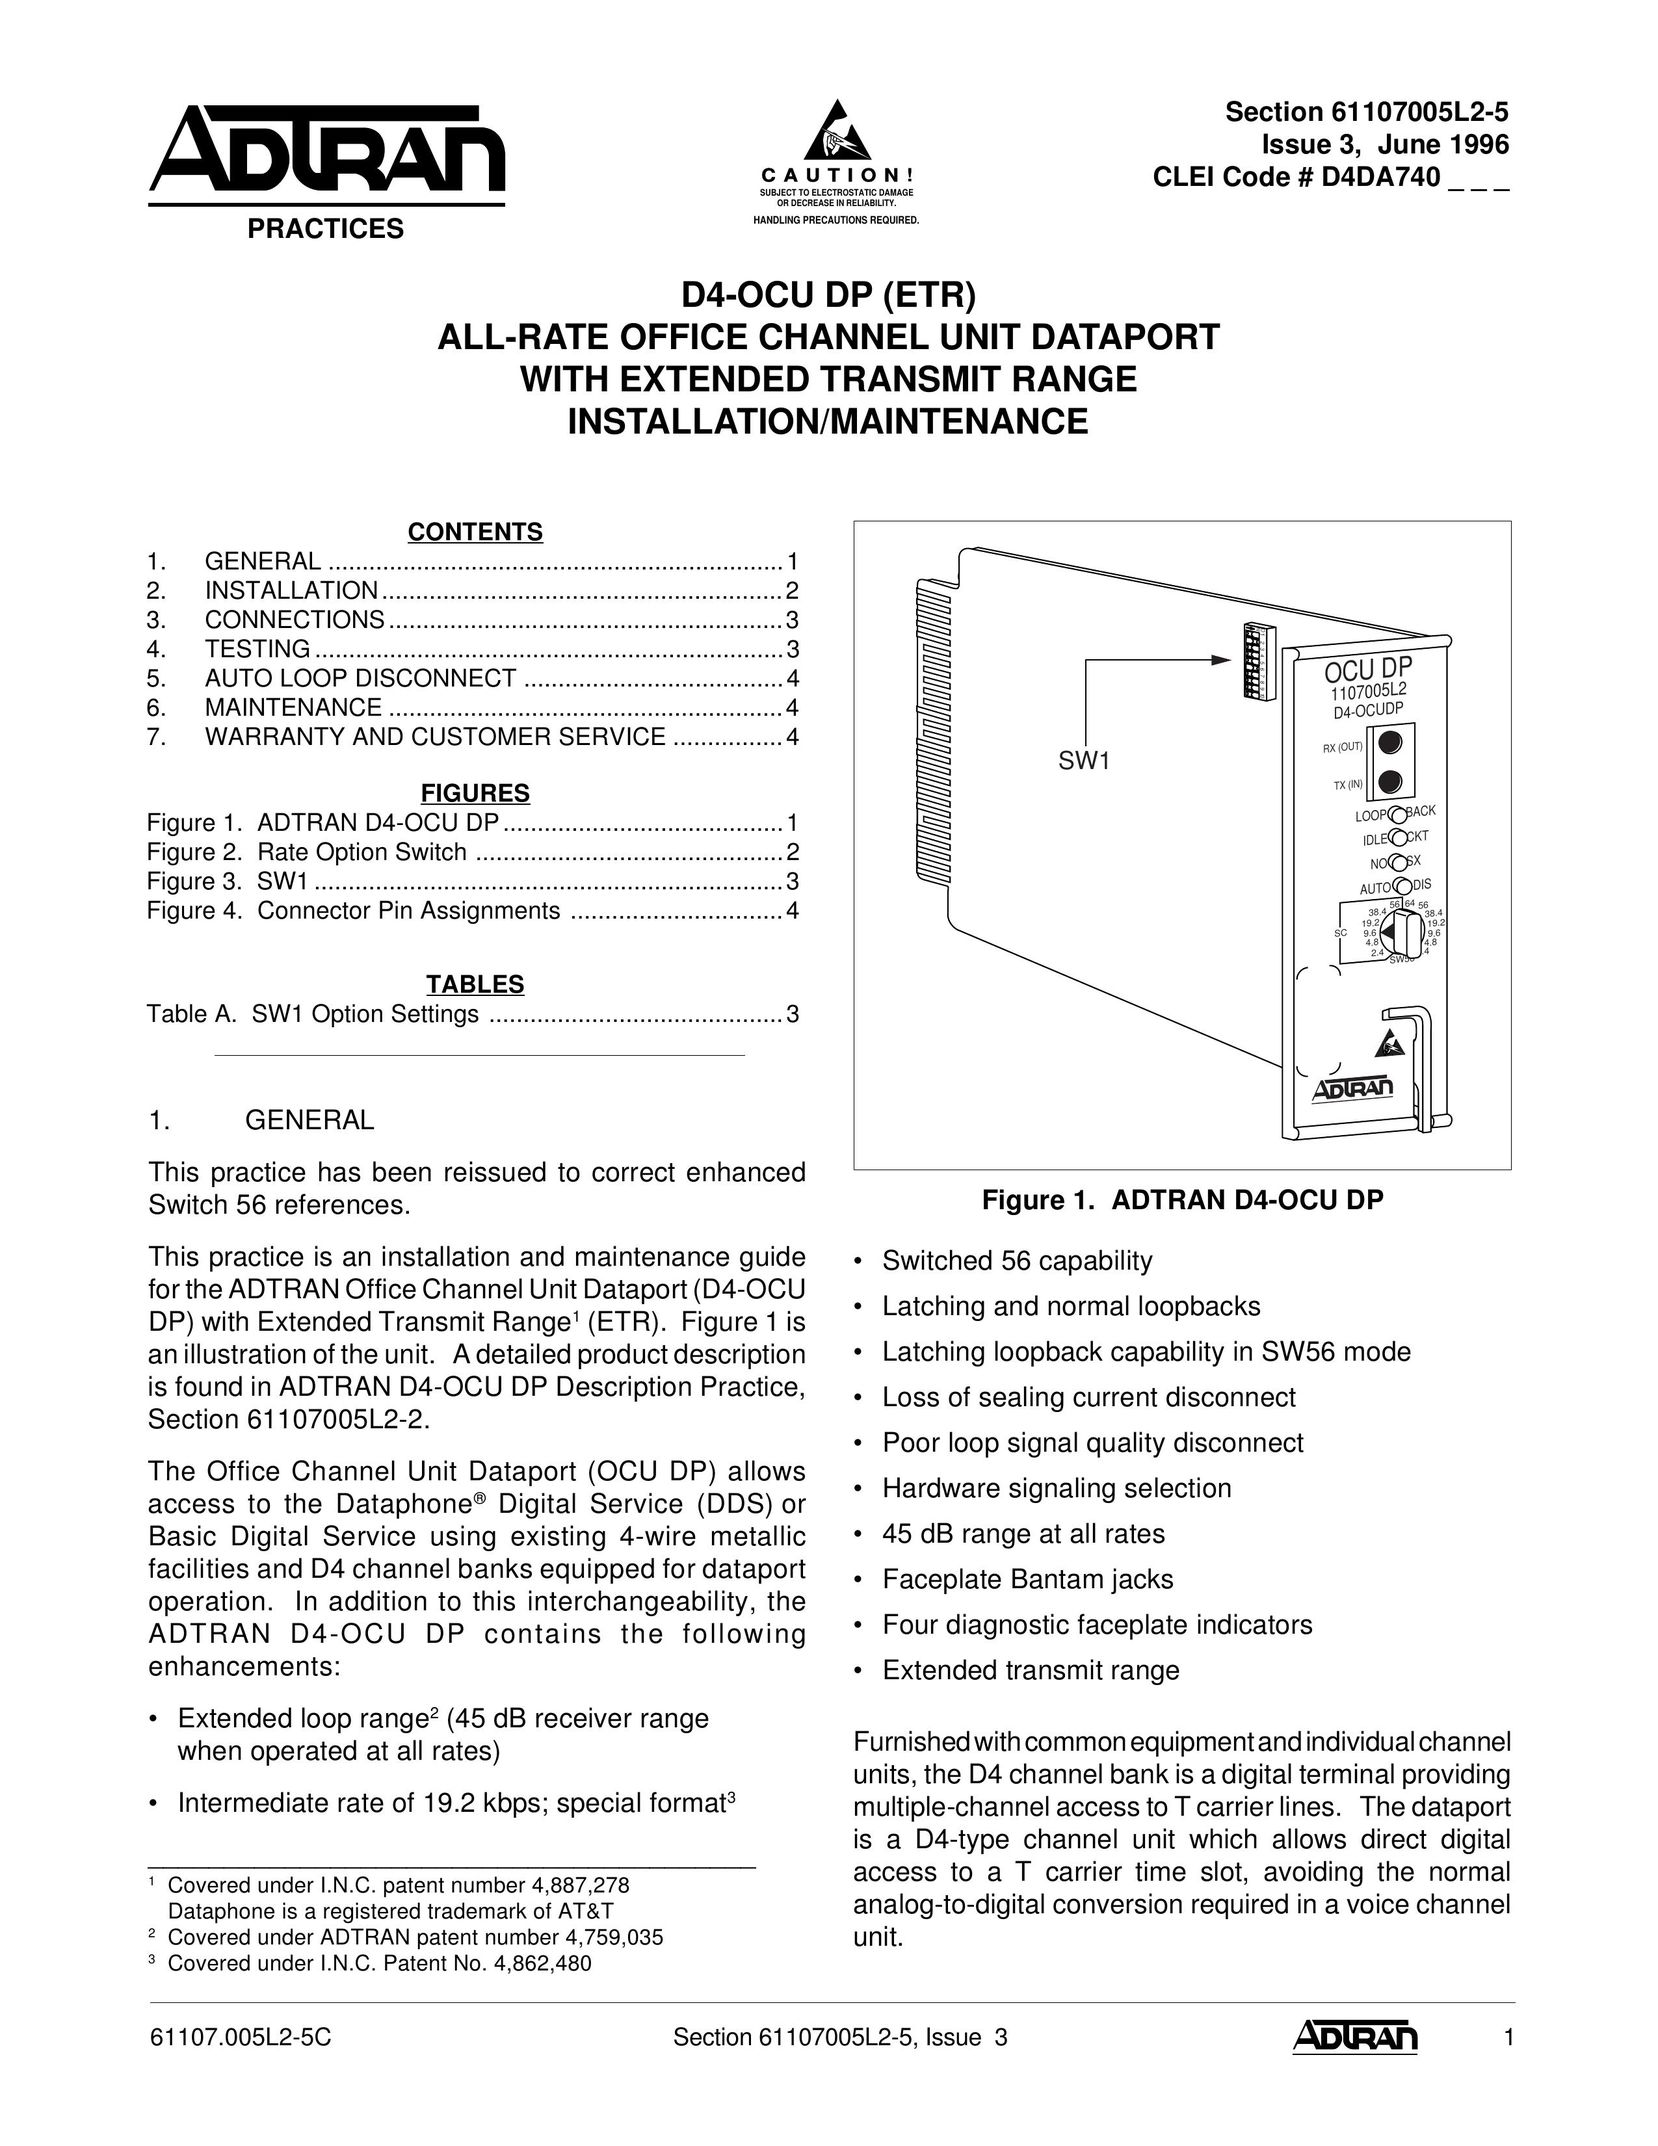 ADTRAN D4-OCU Switch User Manual